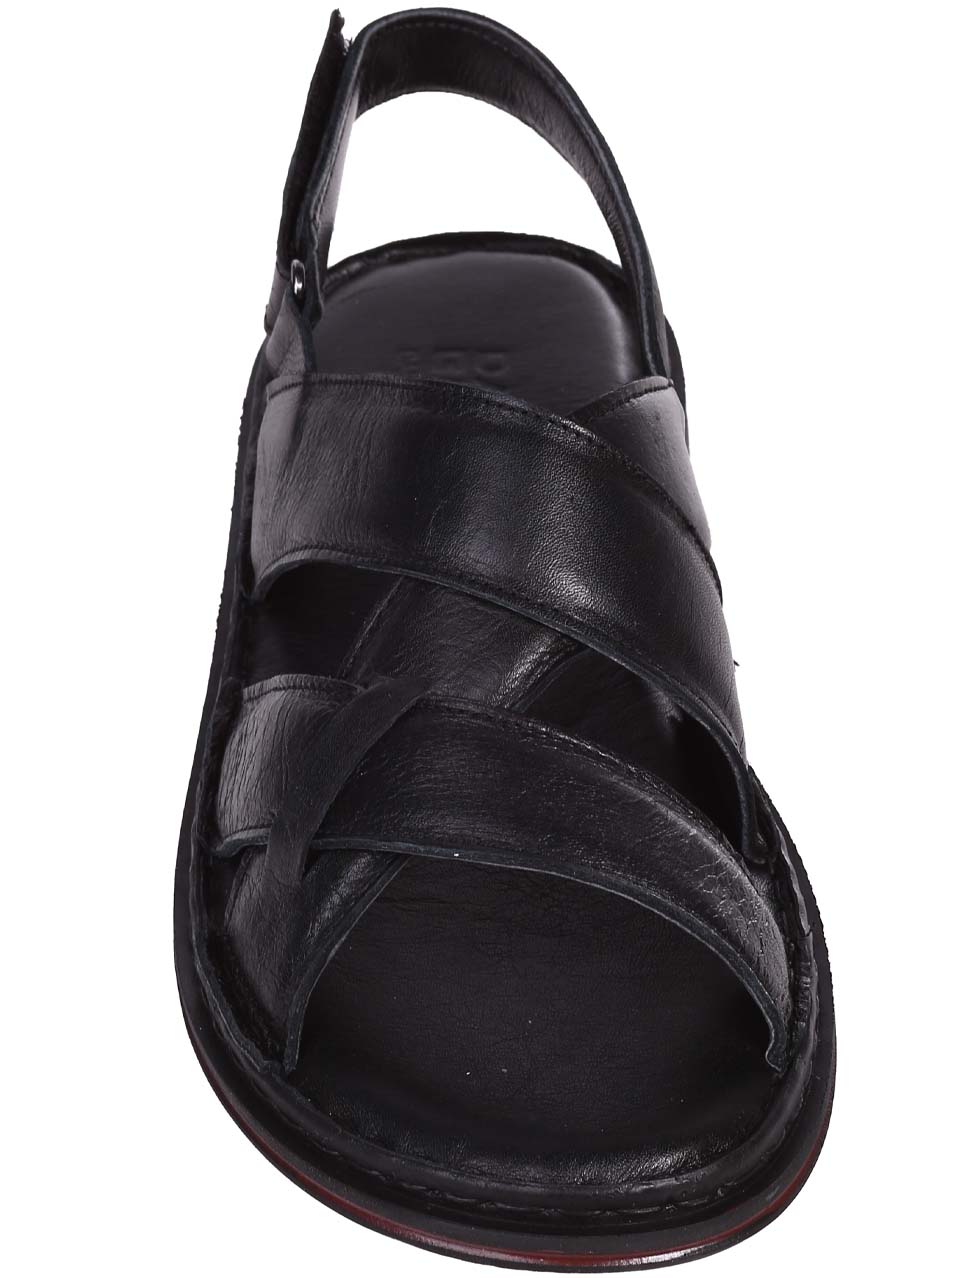 Ежедневни мъжки сандали от естествена кожа в черно 8AT-24401 black